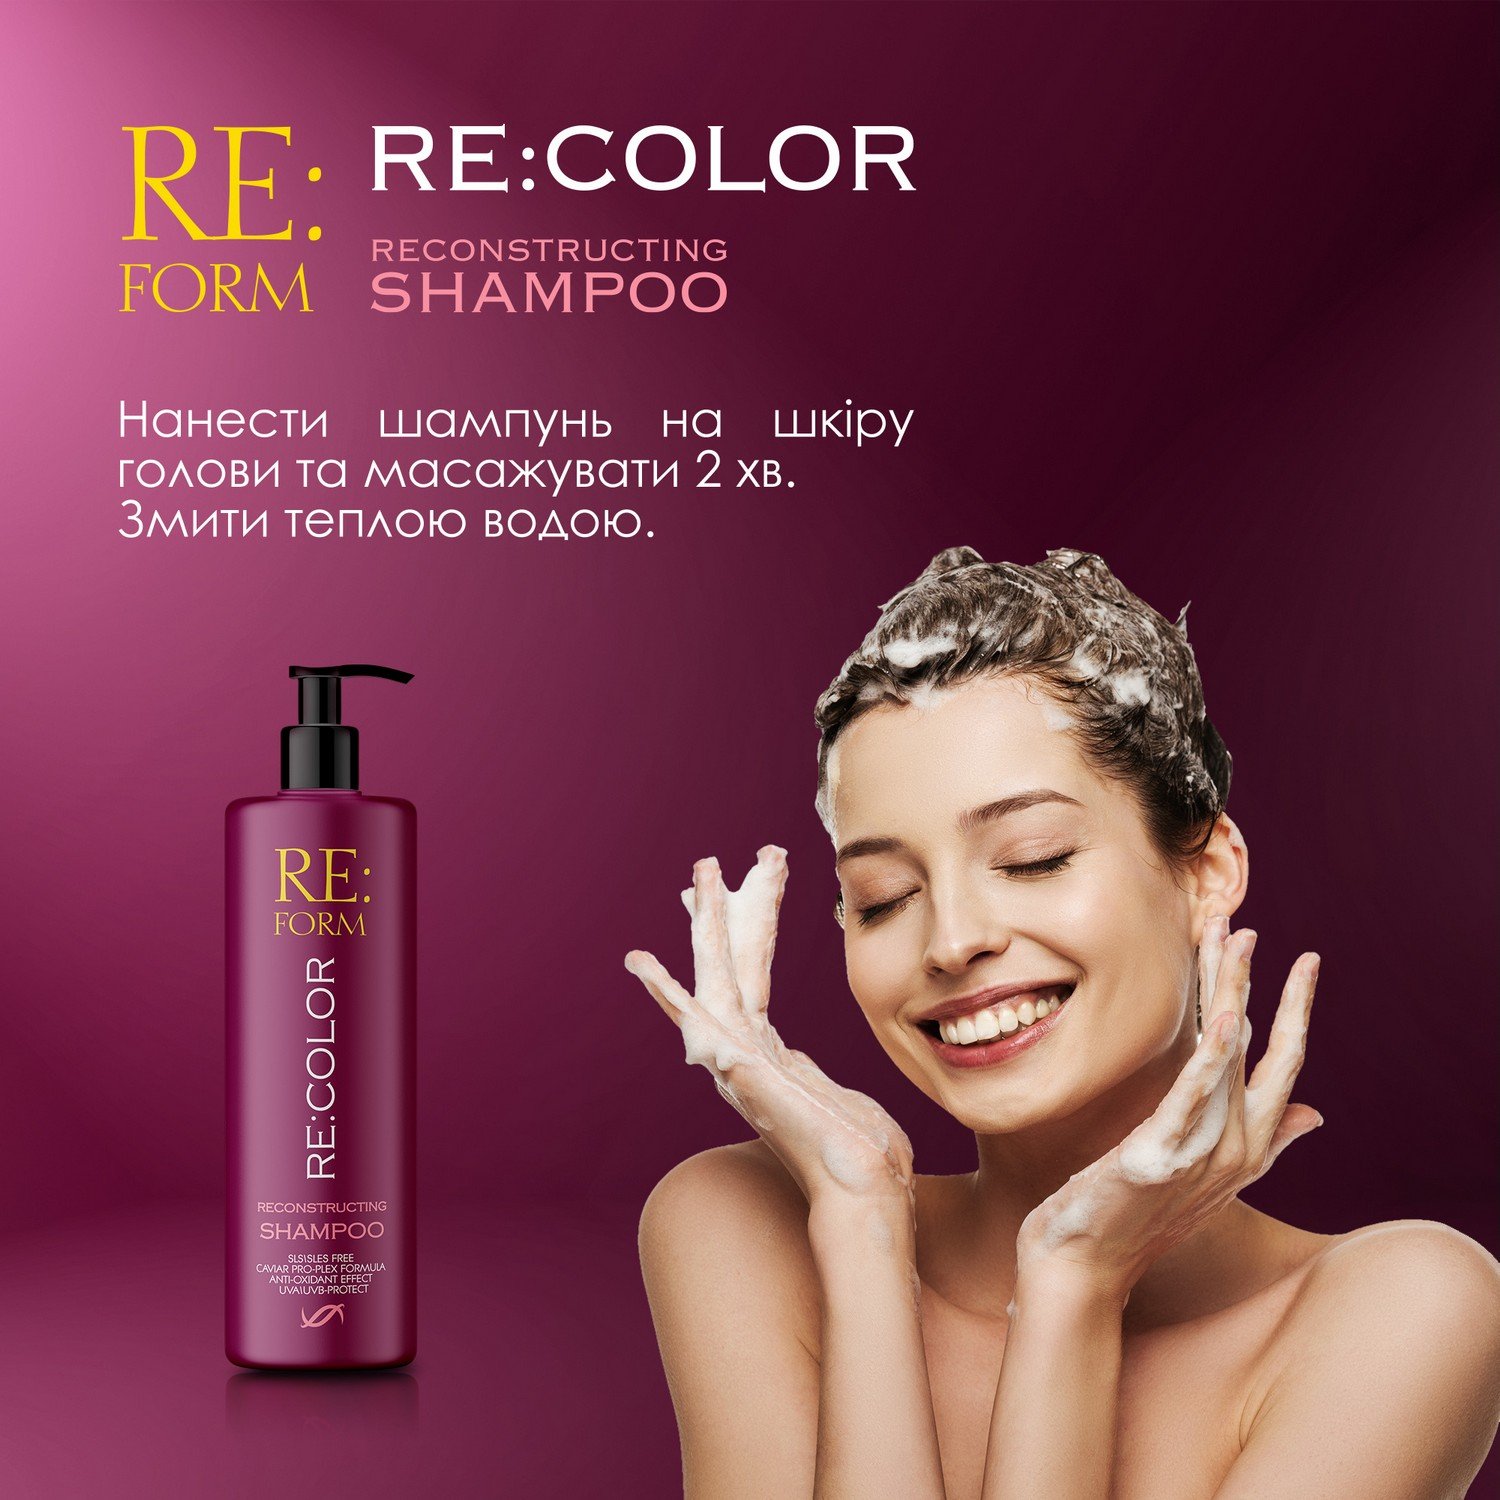 Реконструюючий шампунь Re:form Re:color Збереження кольору та відновлення фарбованого волосся, 400 мл - фото 8